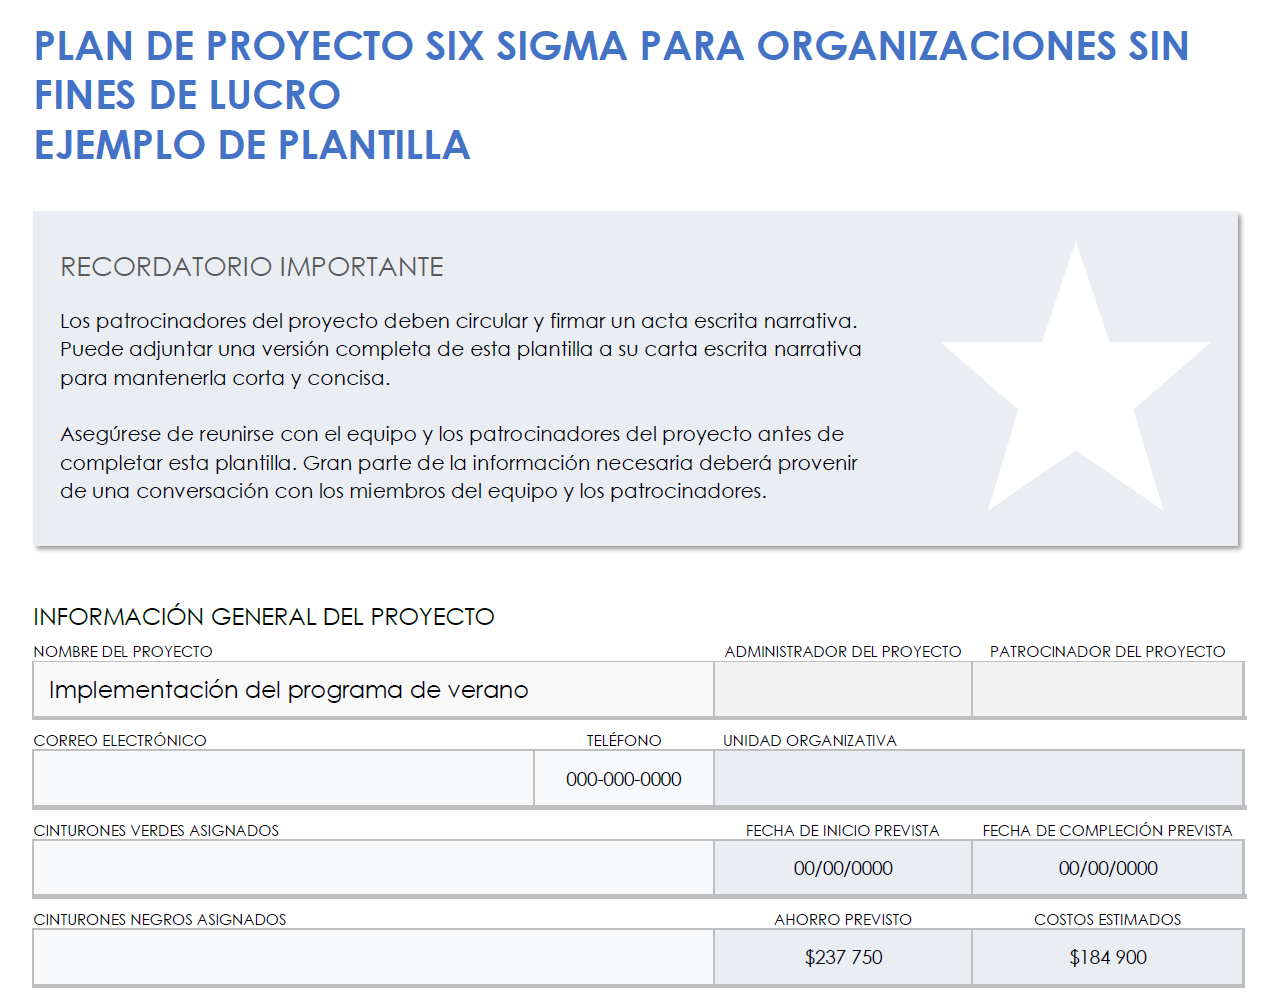 Ejemplo de estatuto de proyecto Six Sigma sin fines de lucro